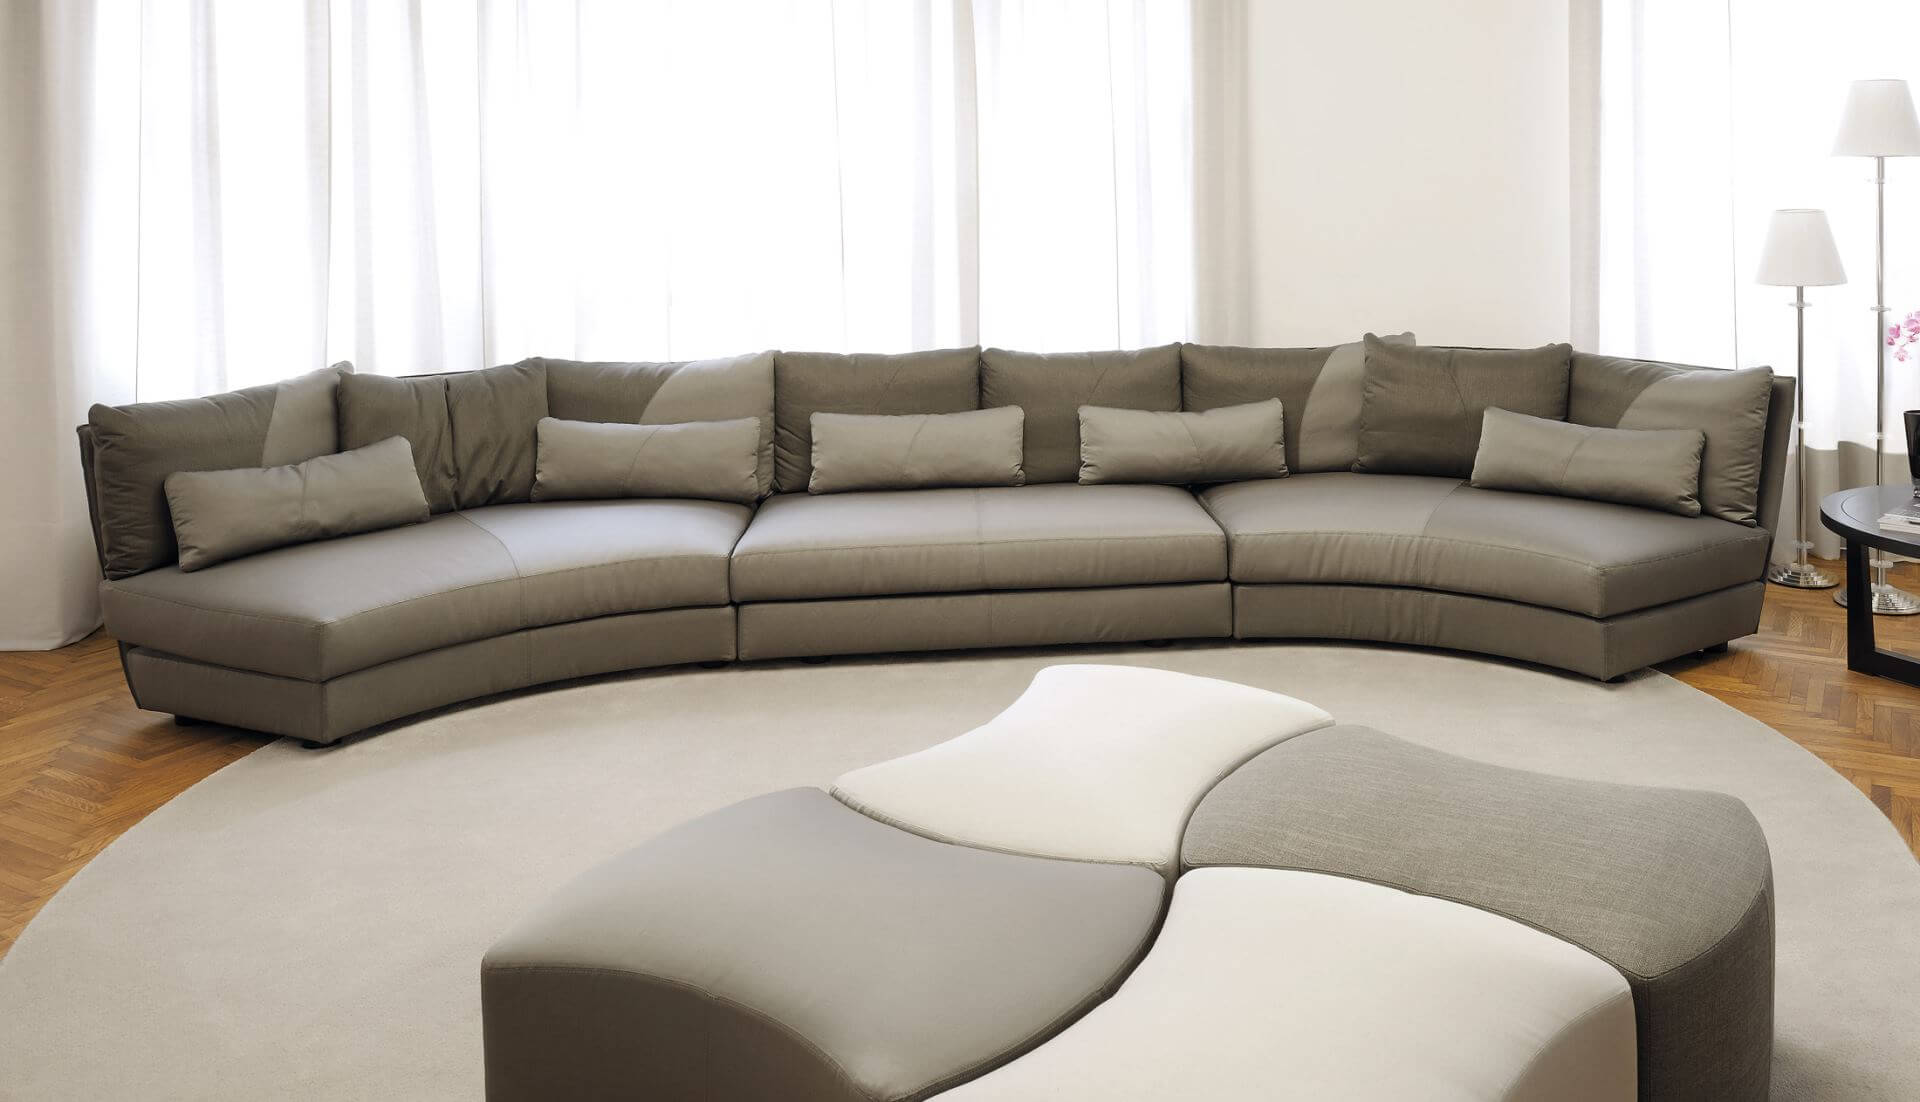 Giorgetti Dhow Curved Modular Sofa - Dream Design Interiors Ltd